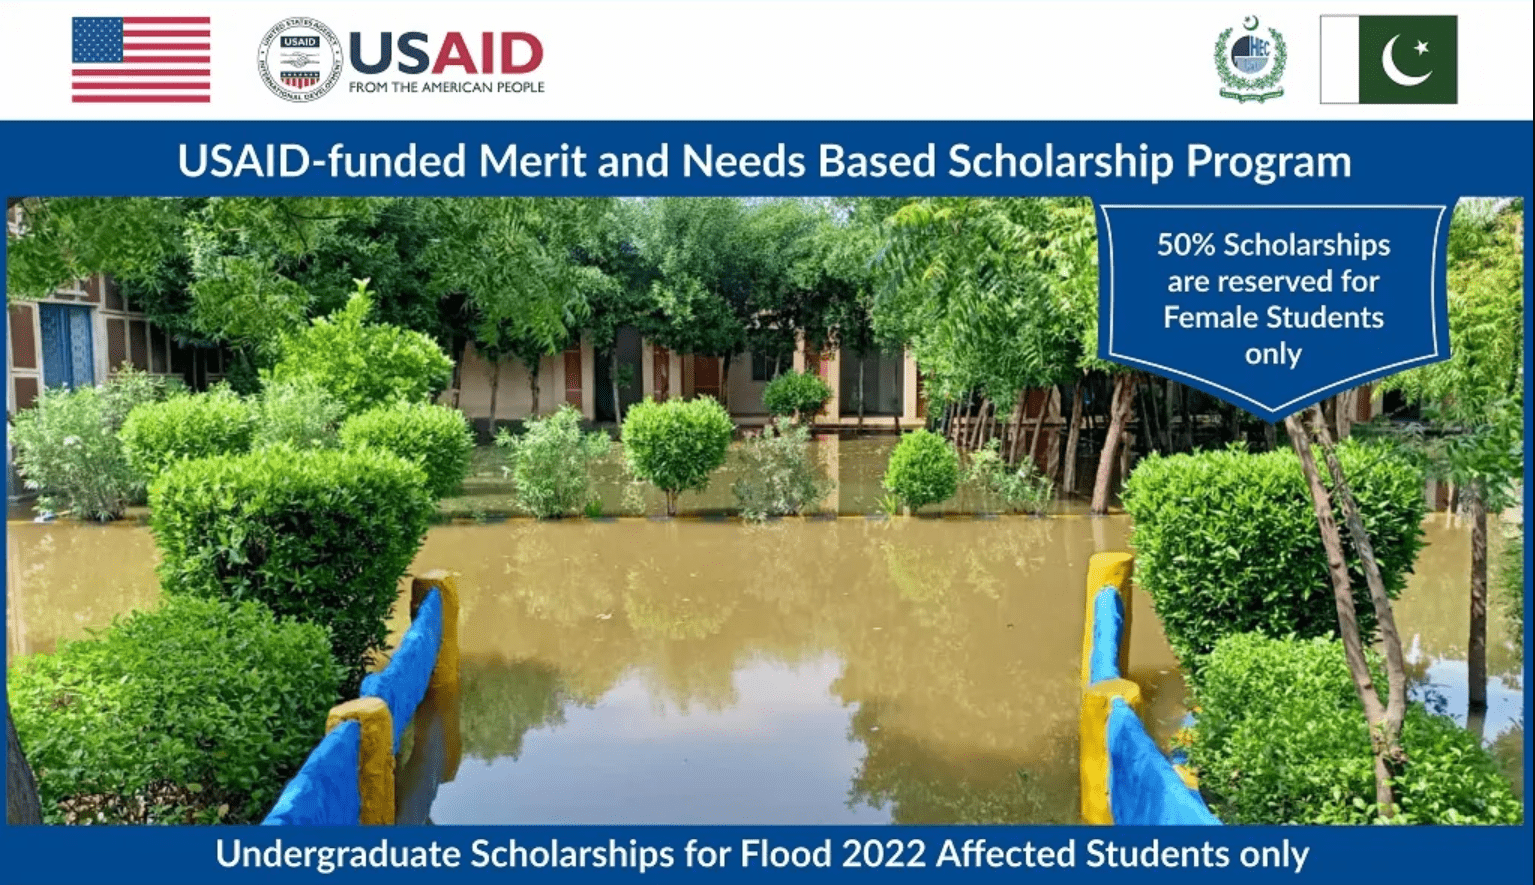 USAID Undergraduate Scholarships